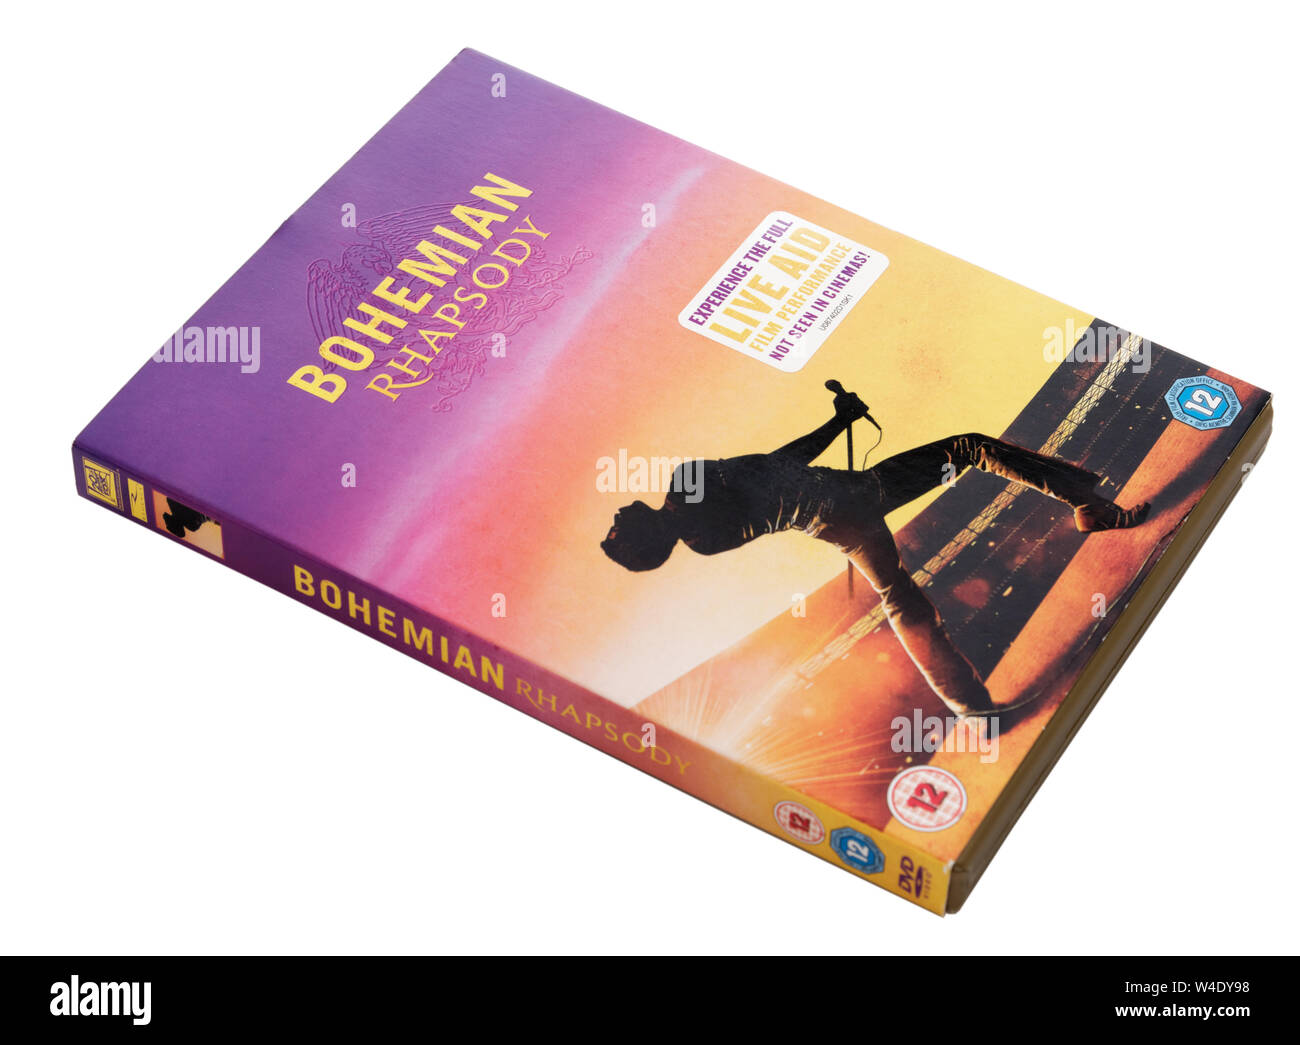 Bohemian Rhapsody DVD Stock Photo - Alamy